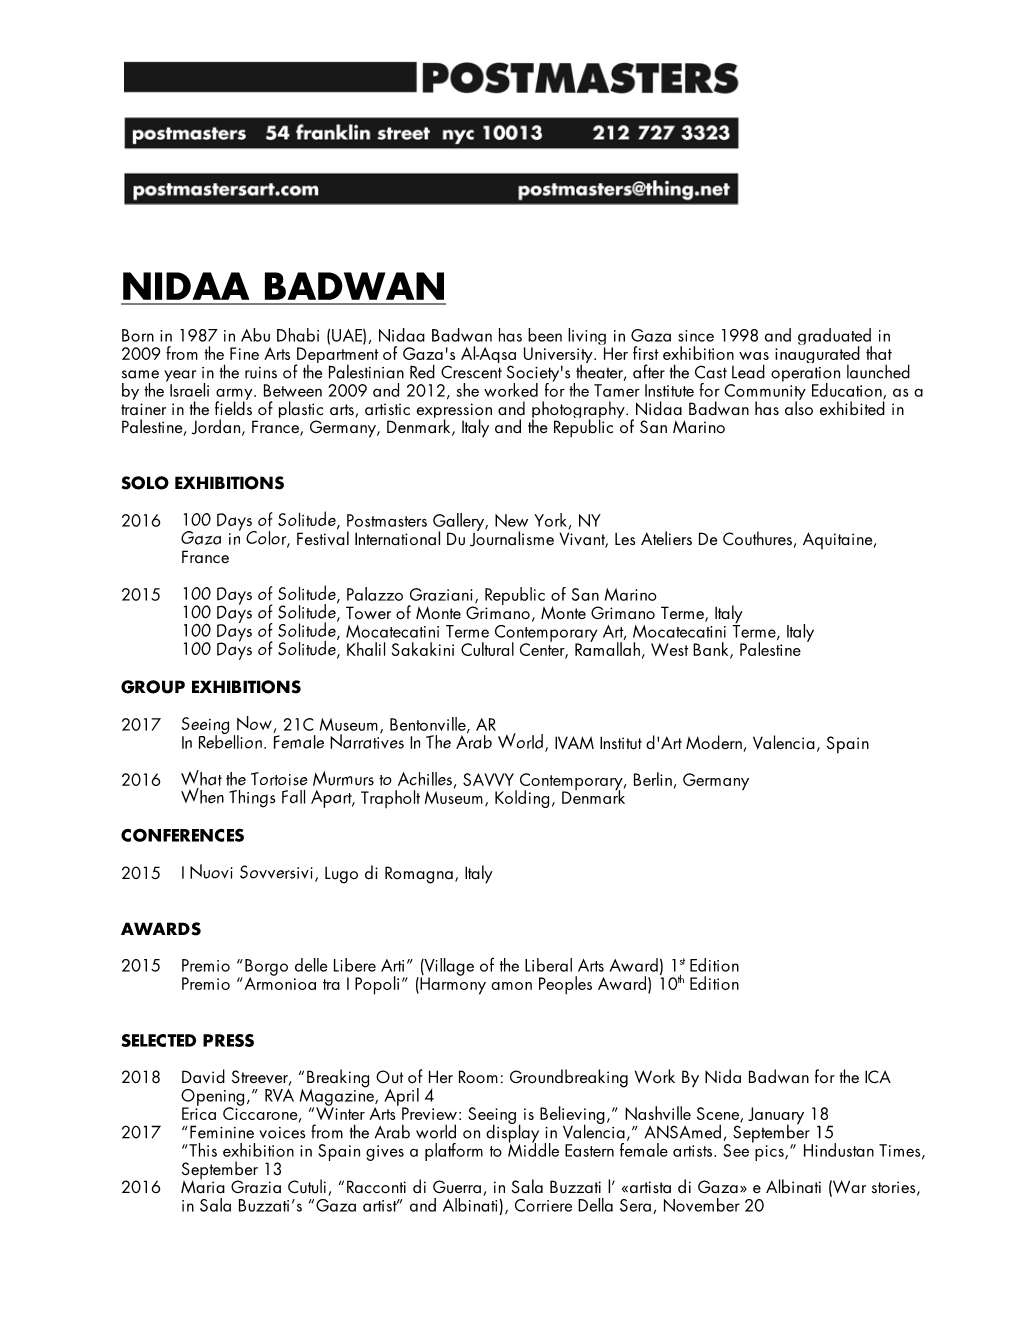 Nidaa Badwan